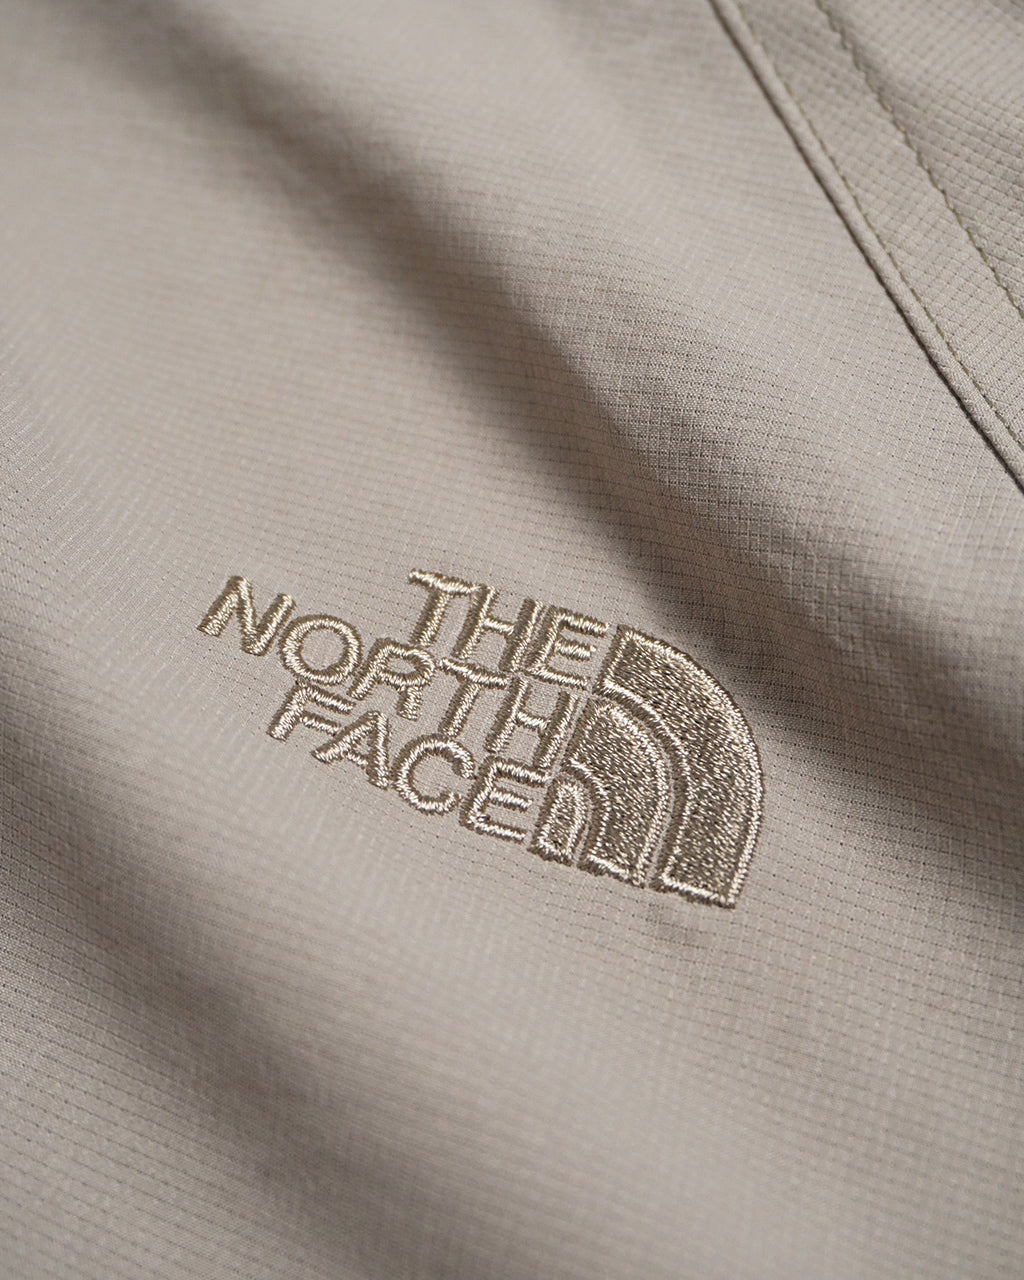 THE NORTH FACE ノースフェイス TNF ビーフリー ジャケット TNF Be Free Jacket NPW22132【送料無料】